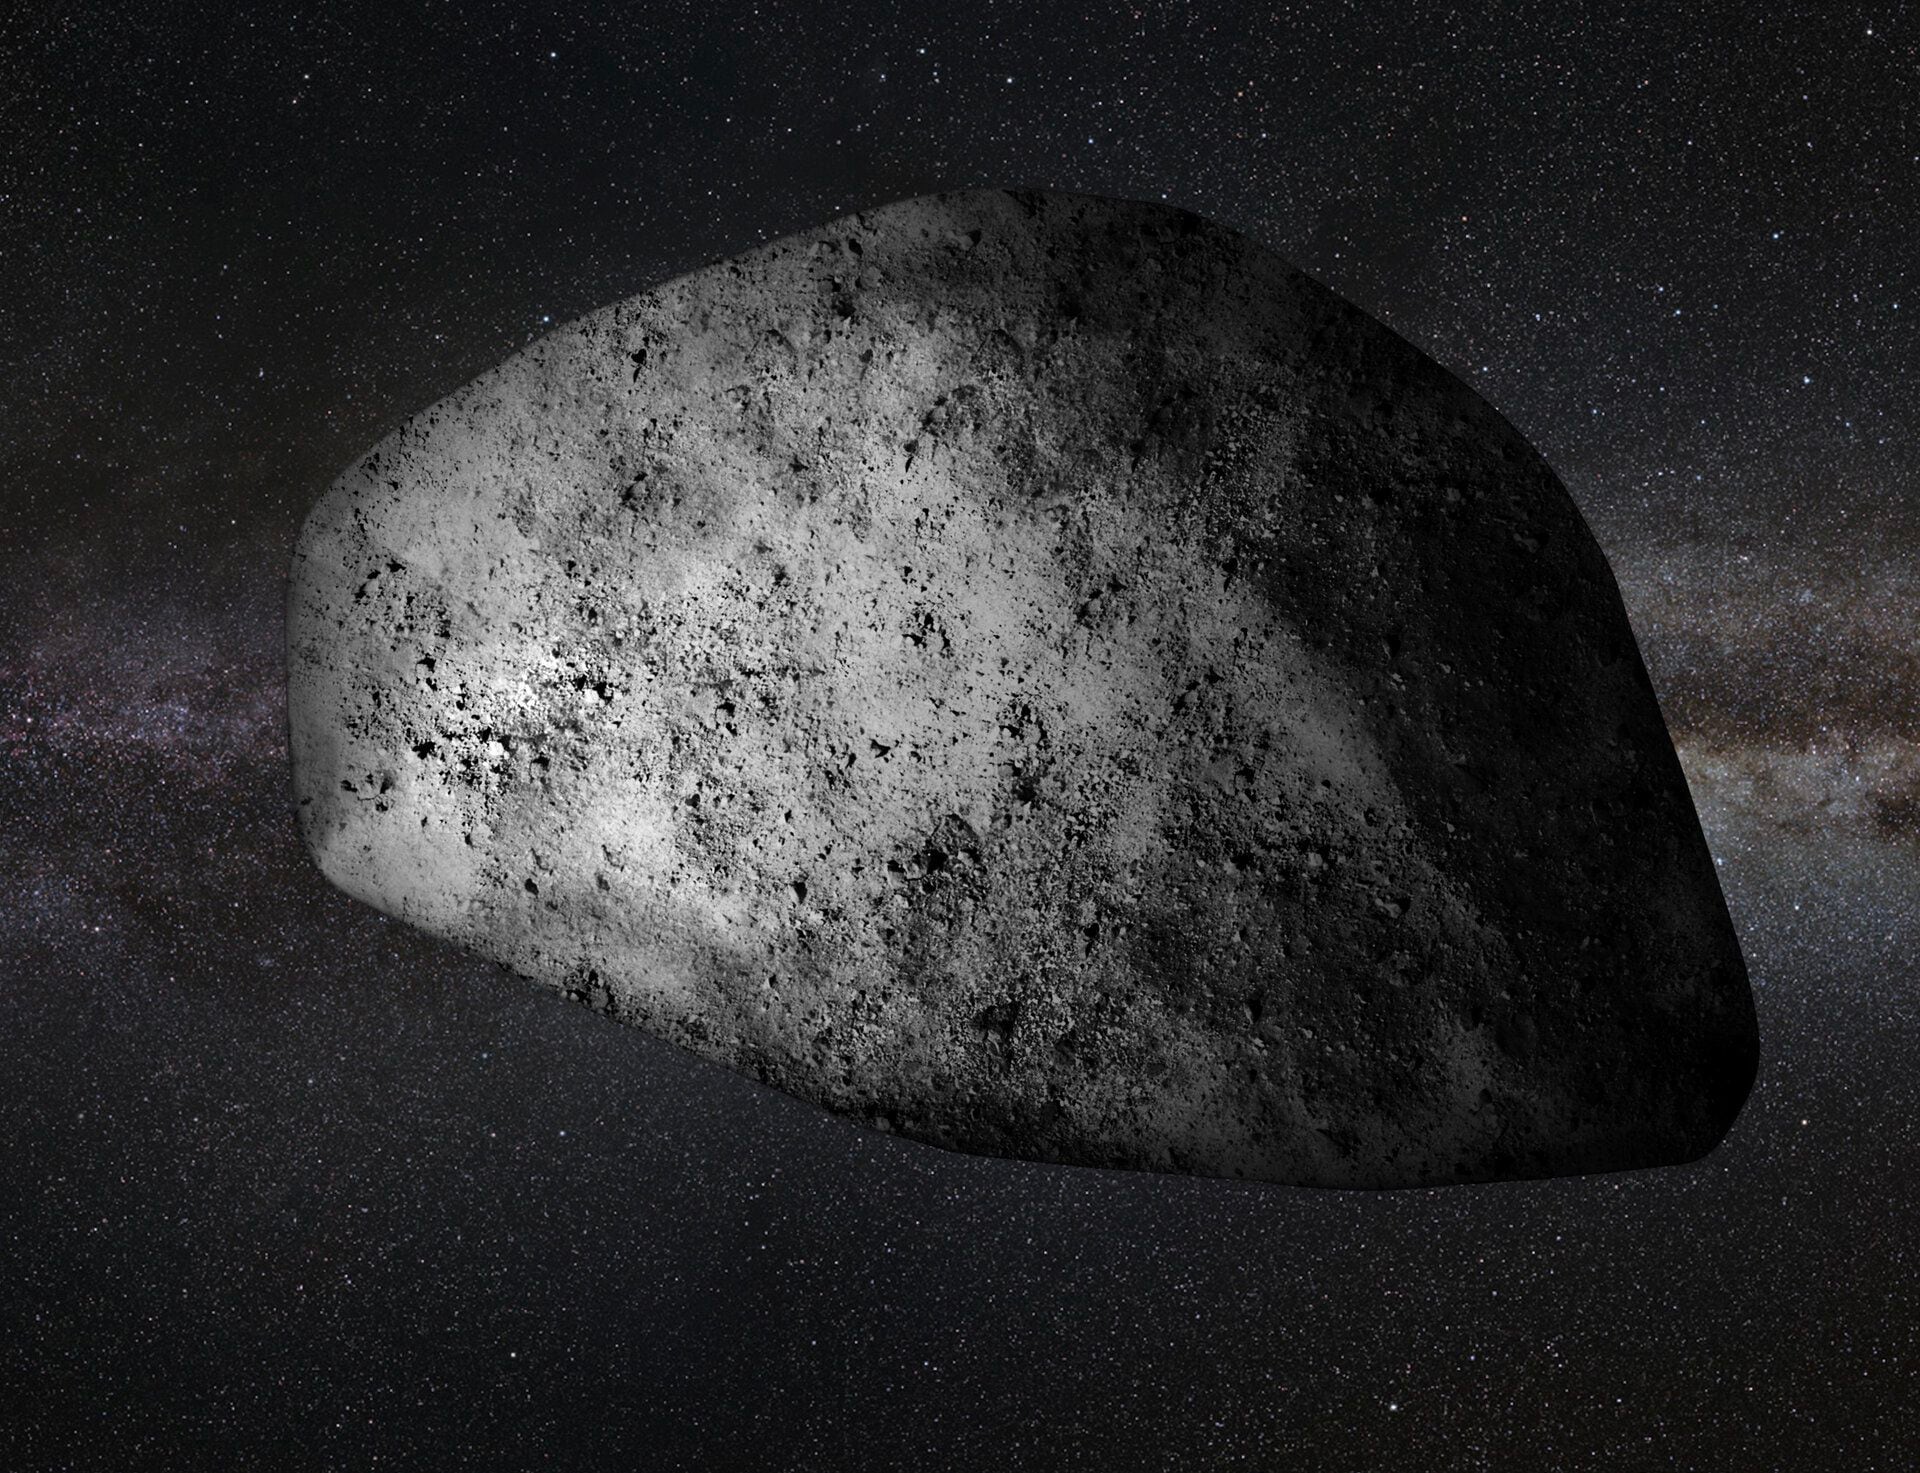 Se estima que esta es una forma aproximada del cometa Apophis.